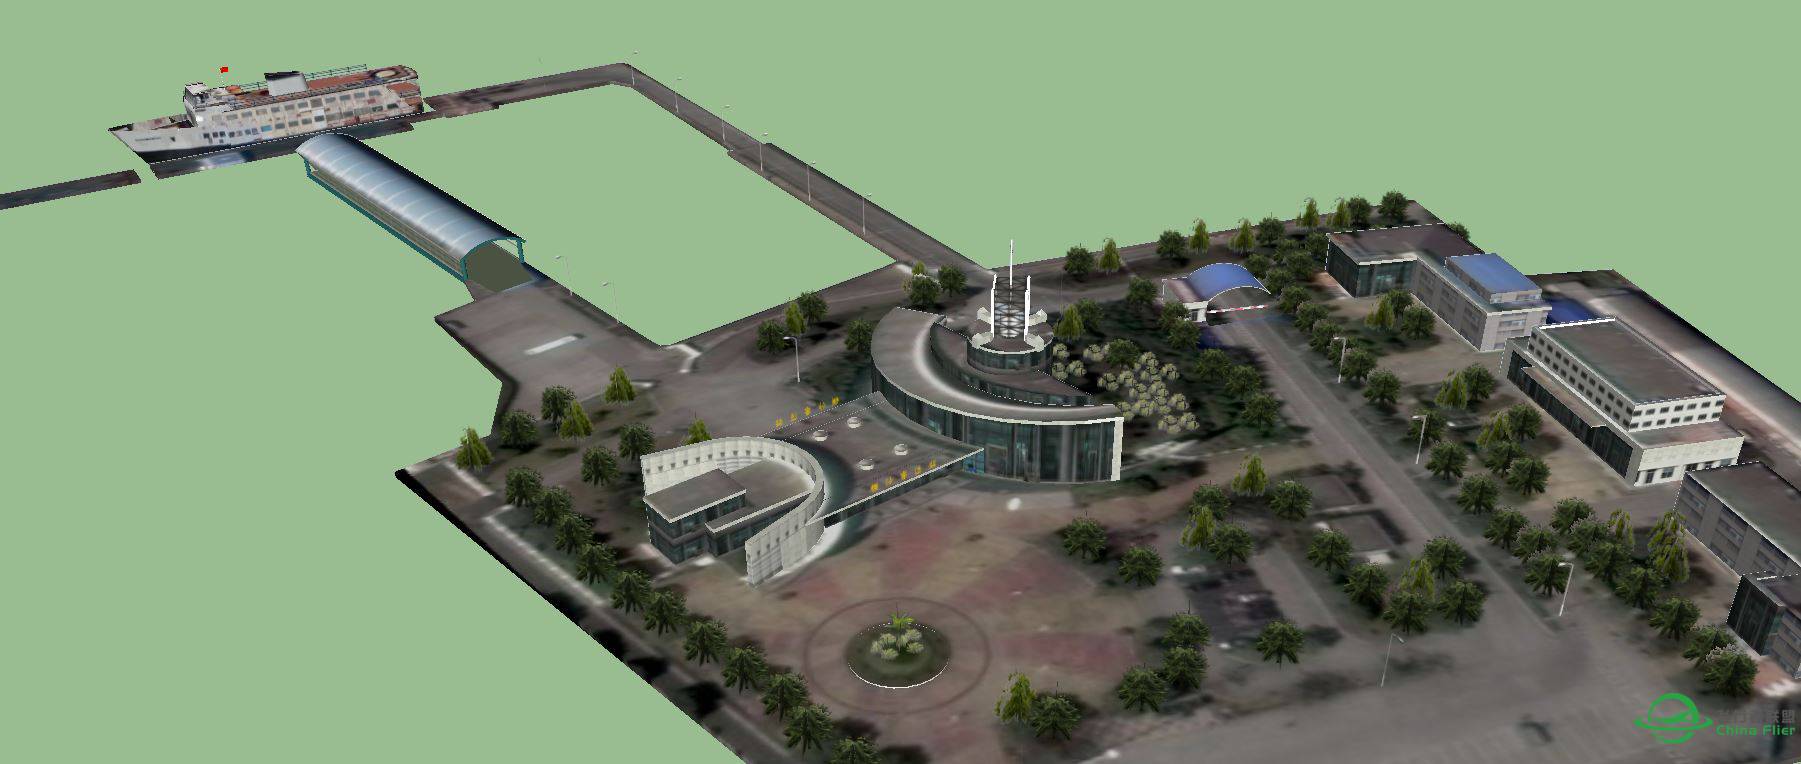 横沙岛地景的横沙客运码头建模完成-3343 